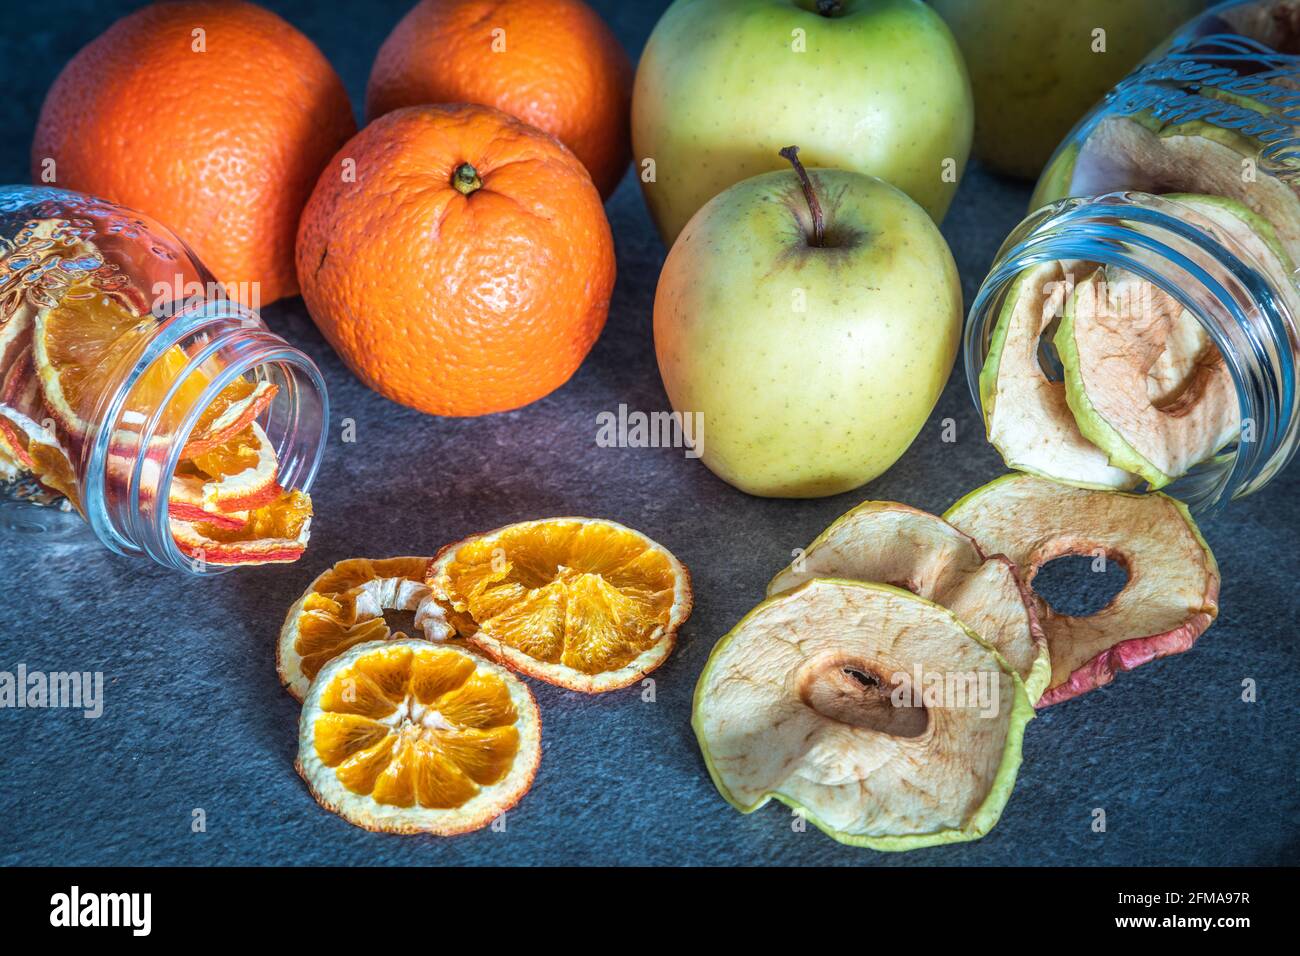 Frische Obstäpfel und Orangen sowie Apfel- und Orangenscheiben dehydriert und in Glasbehältern gelagert, hausgemachte Zubereitungen, Stockfoto